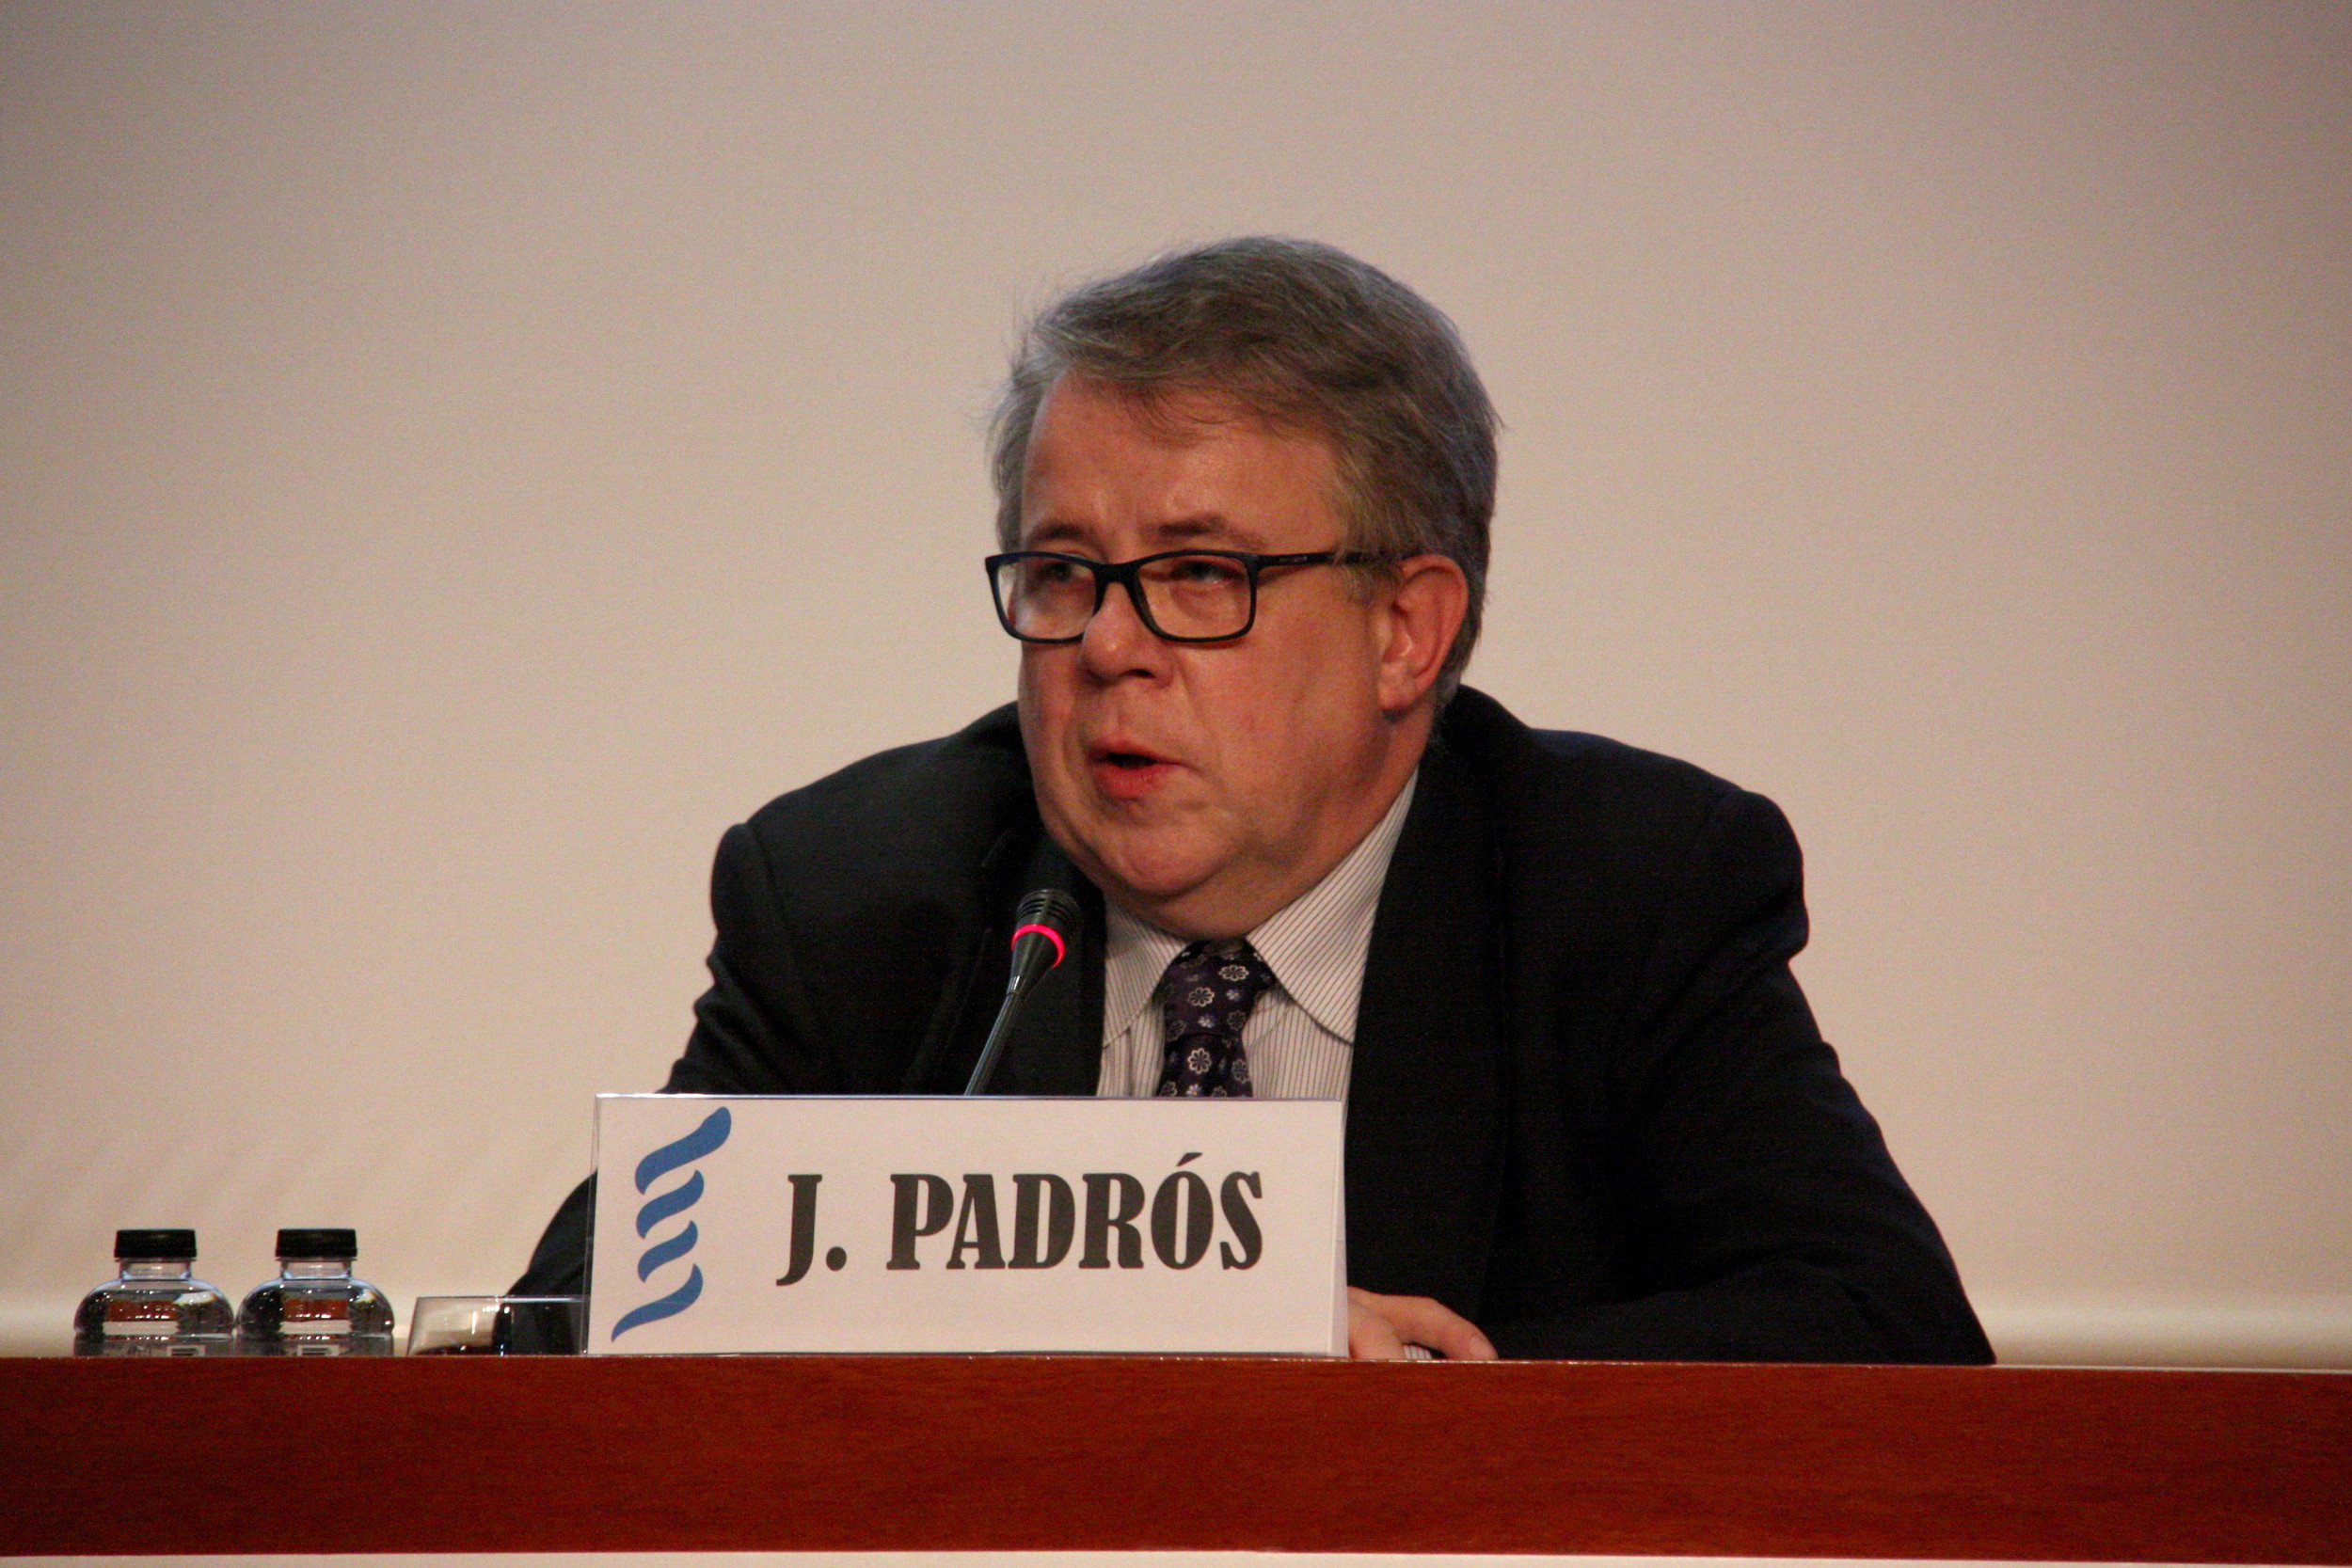 Jaume Padrós, presidente del Col·legi de Metges: "Hay angustia"